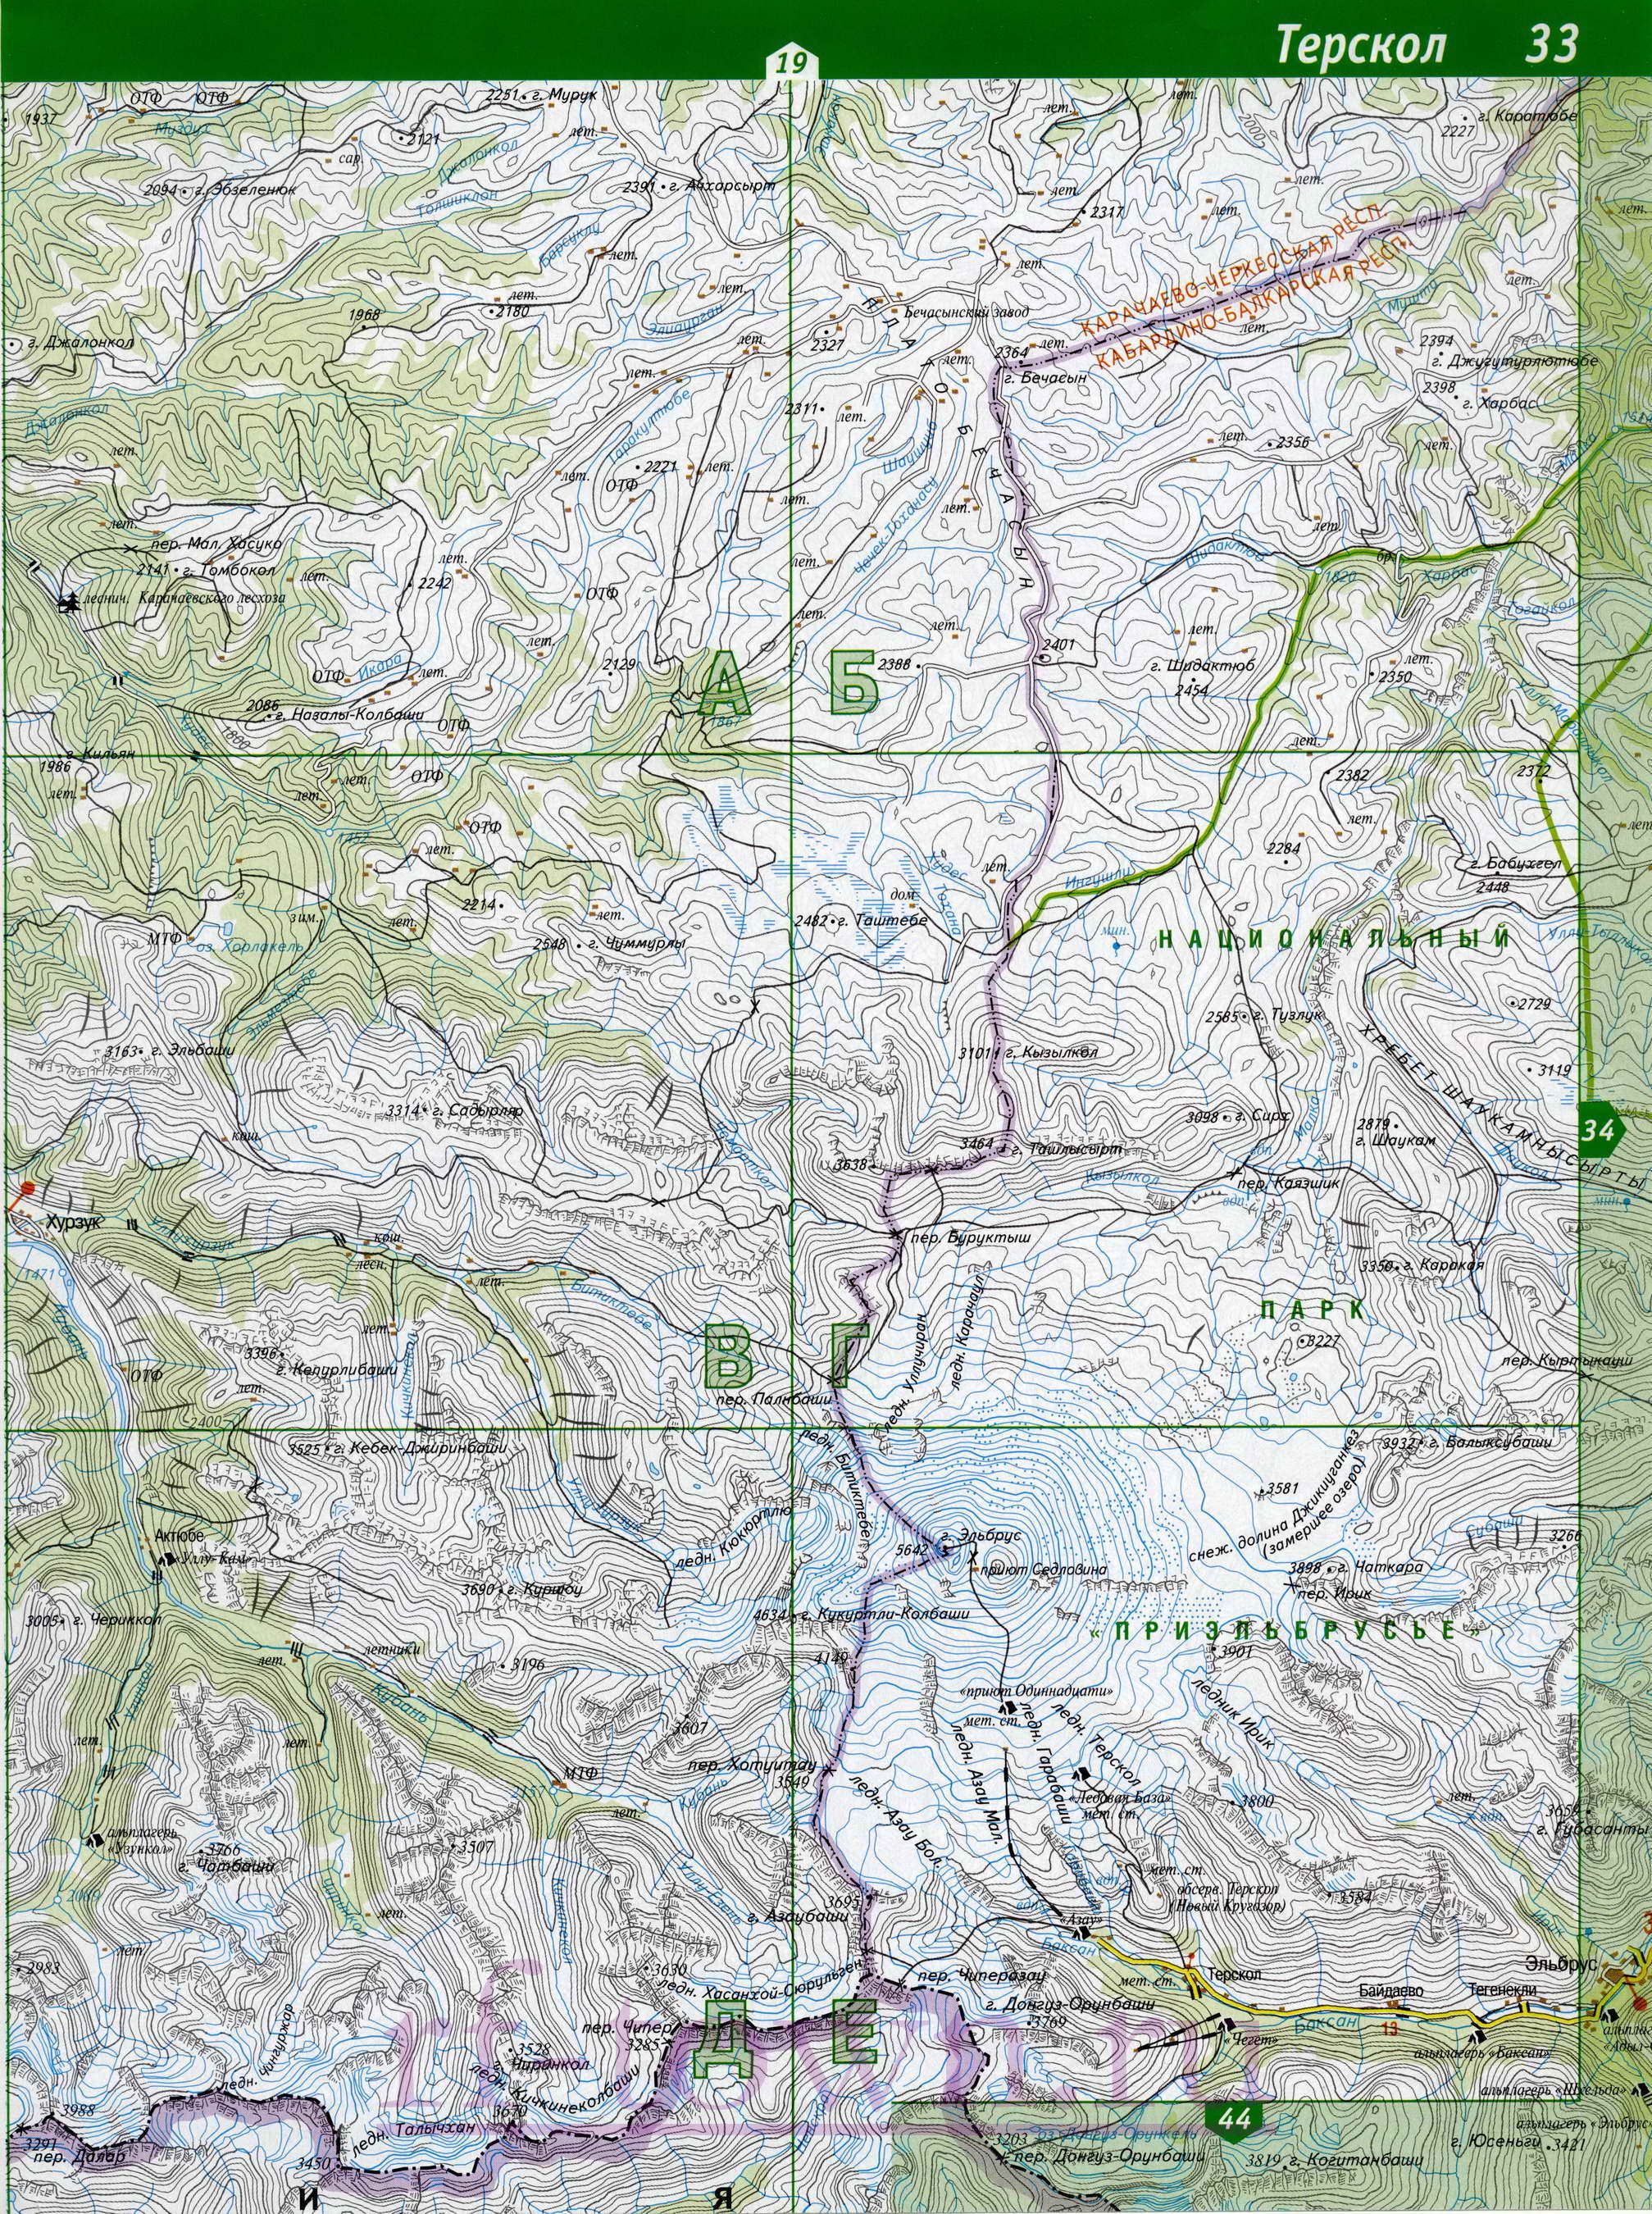 Карта Эльбрусского района Кабардино-Балкарии. Эльбрусский район топографическая карта масштаба 1см:2км, A0 - 